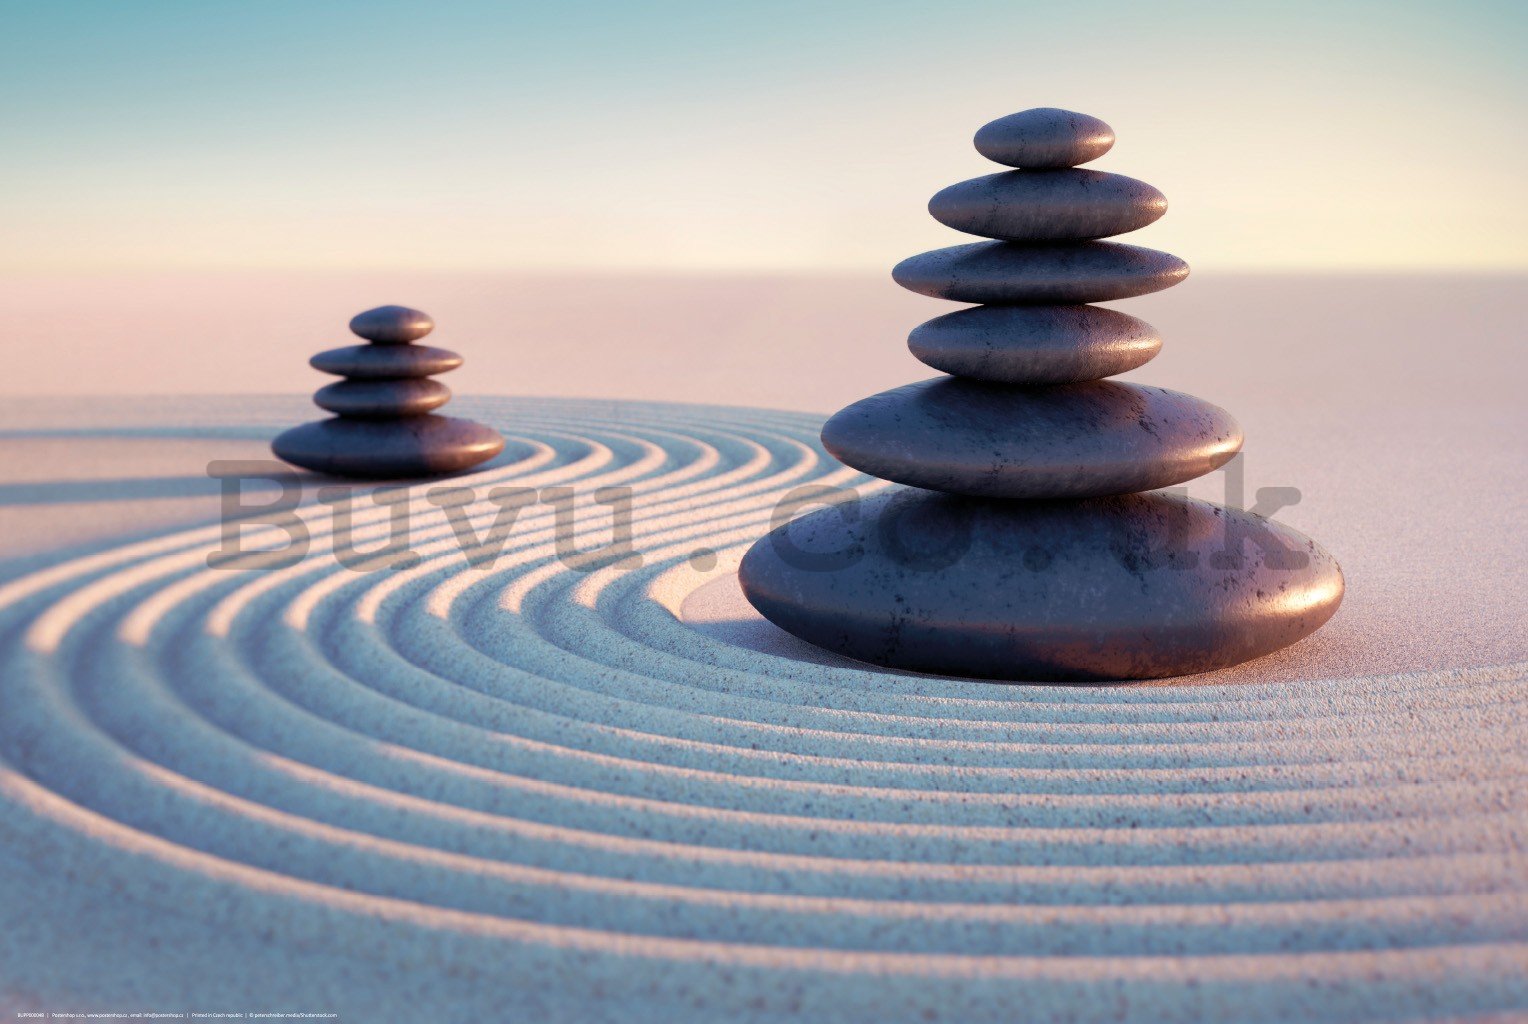 Poster: Zen stones in the sand